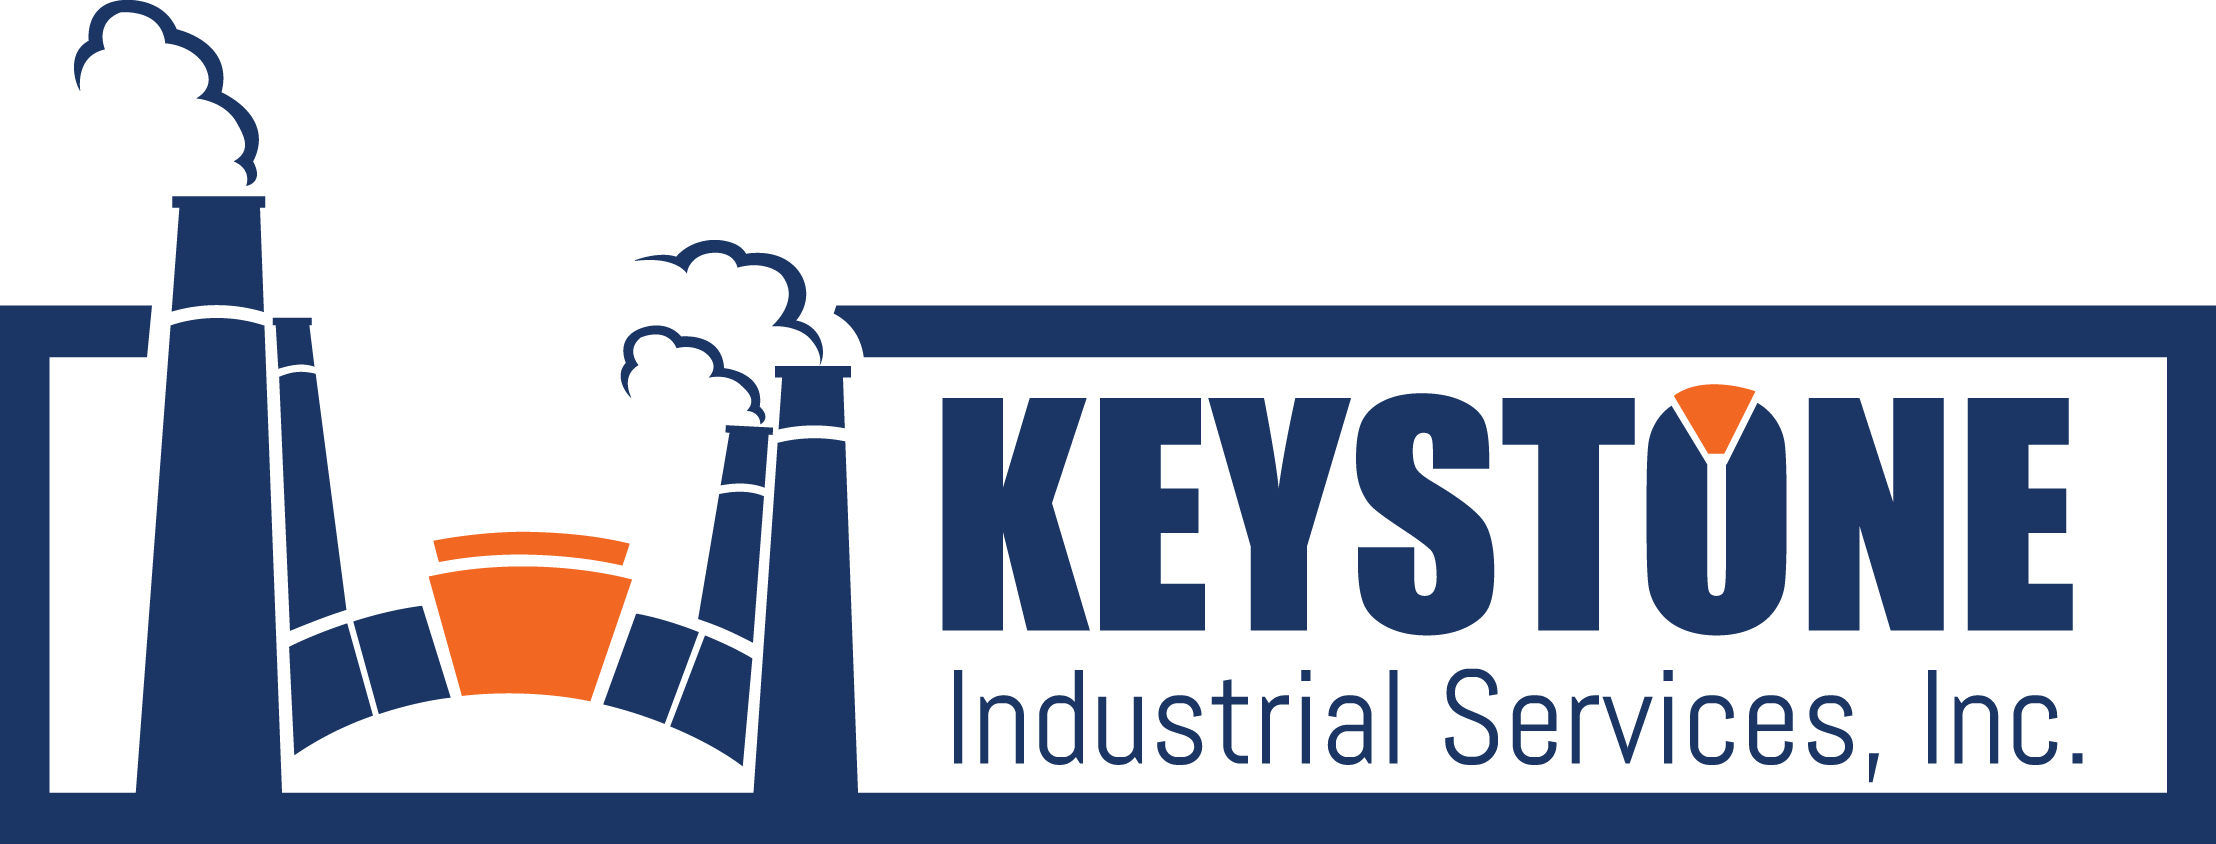 Industrial Service Logo - Gallery. Mid Atlantic Industrial Services, Industrial Painters